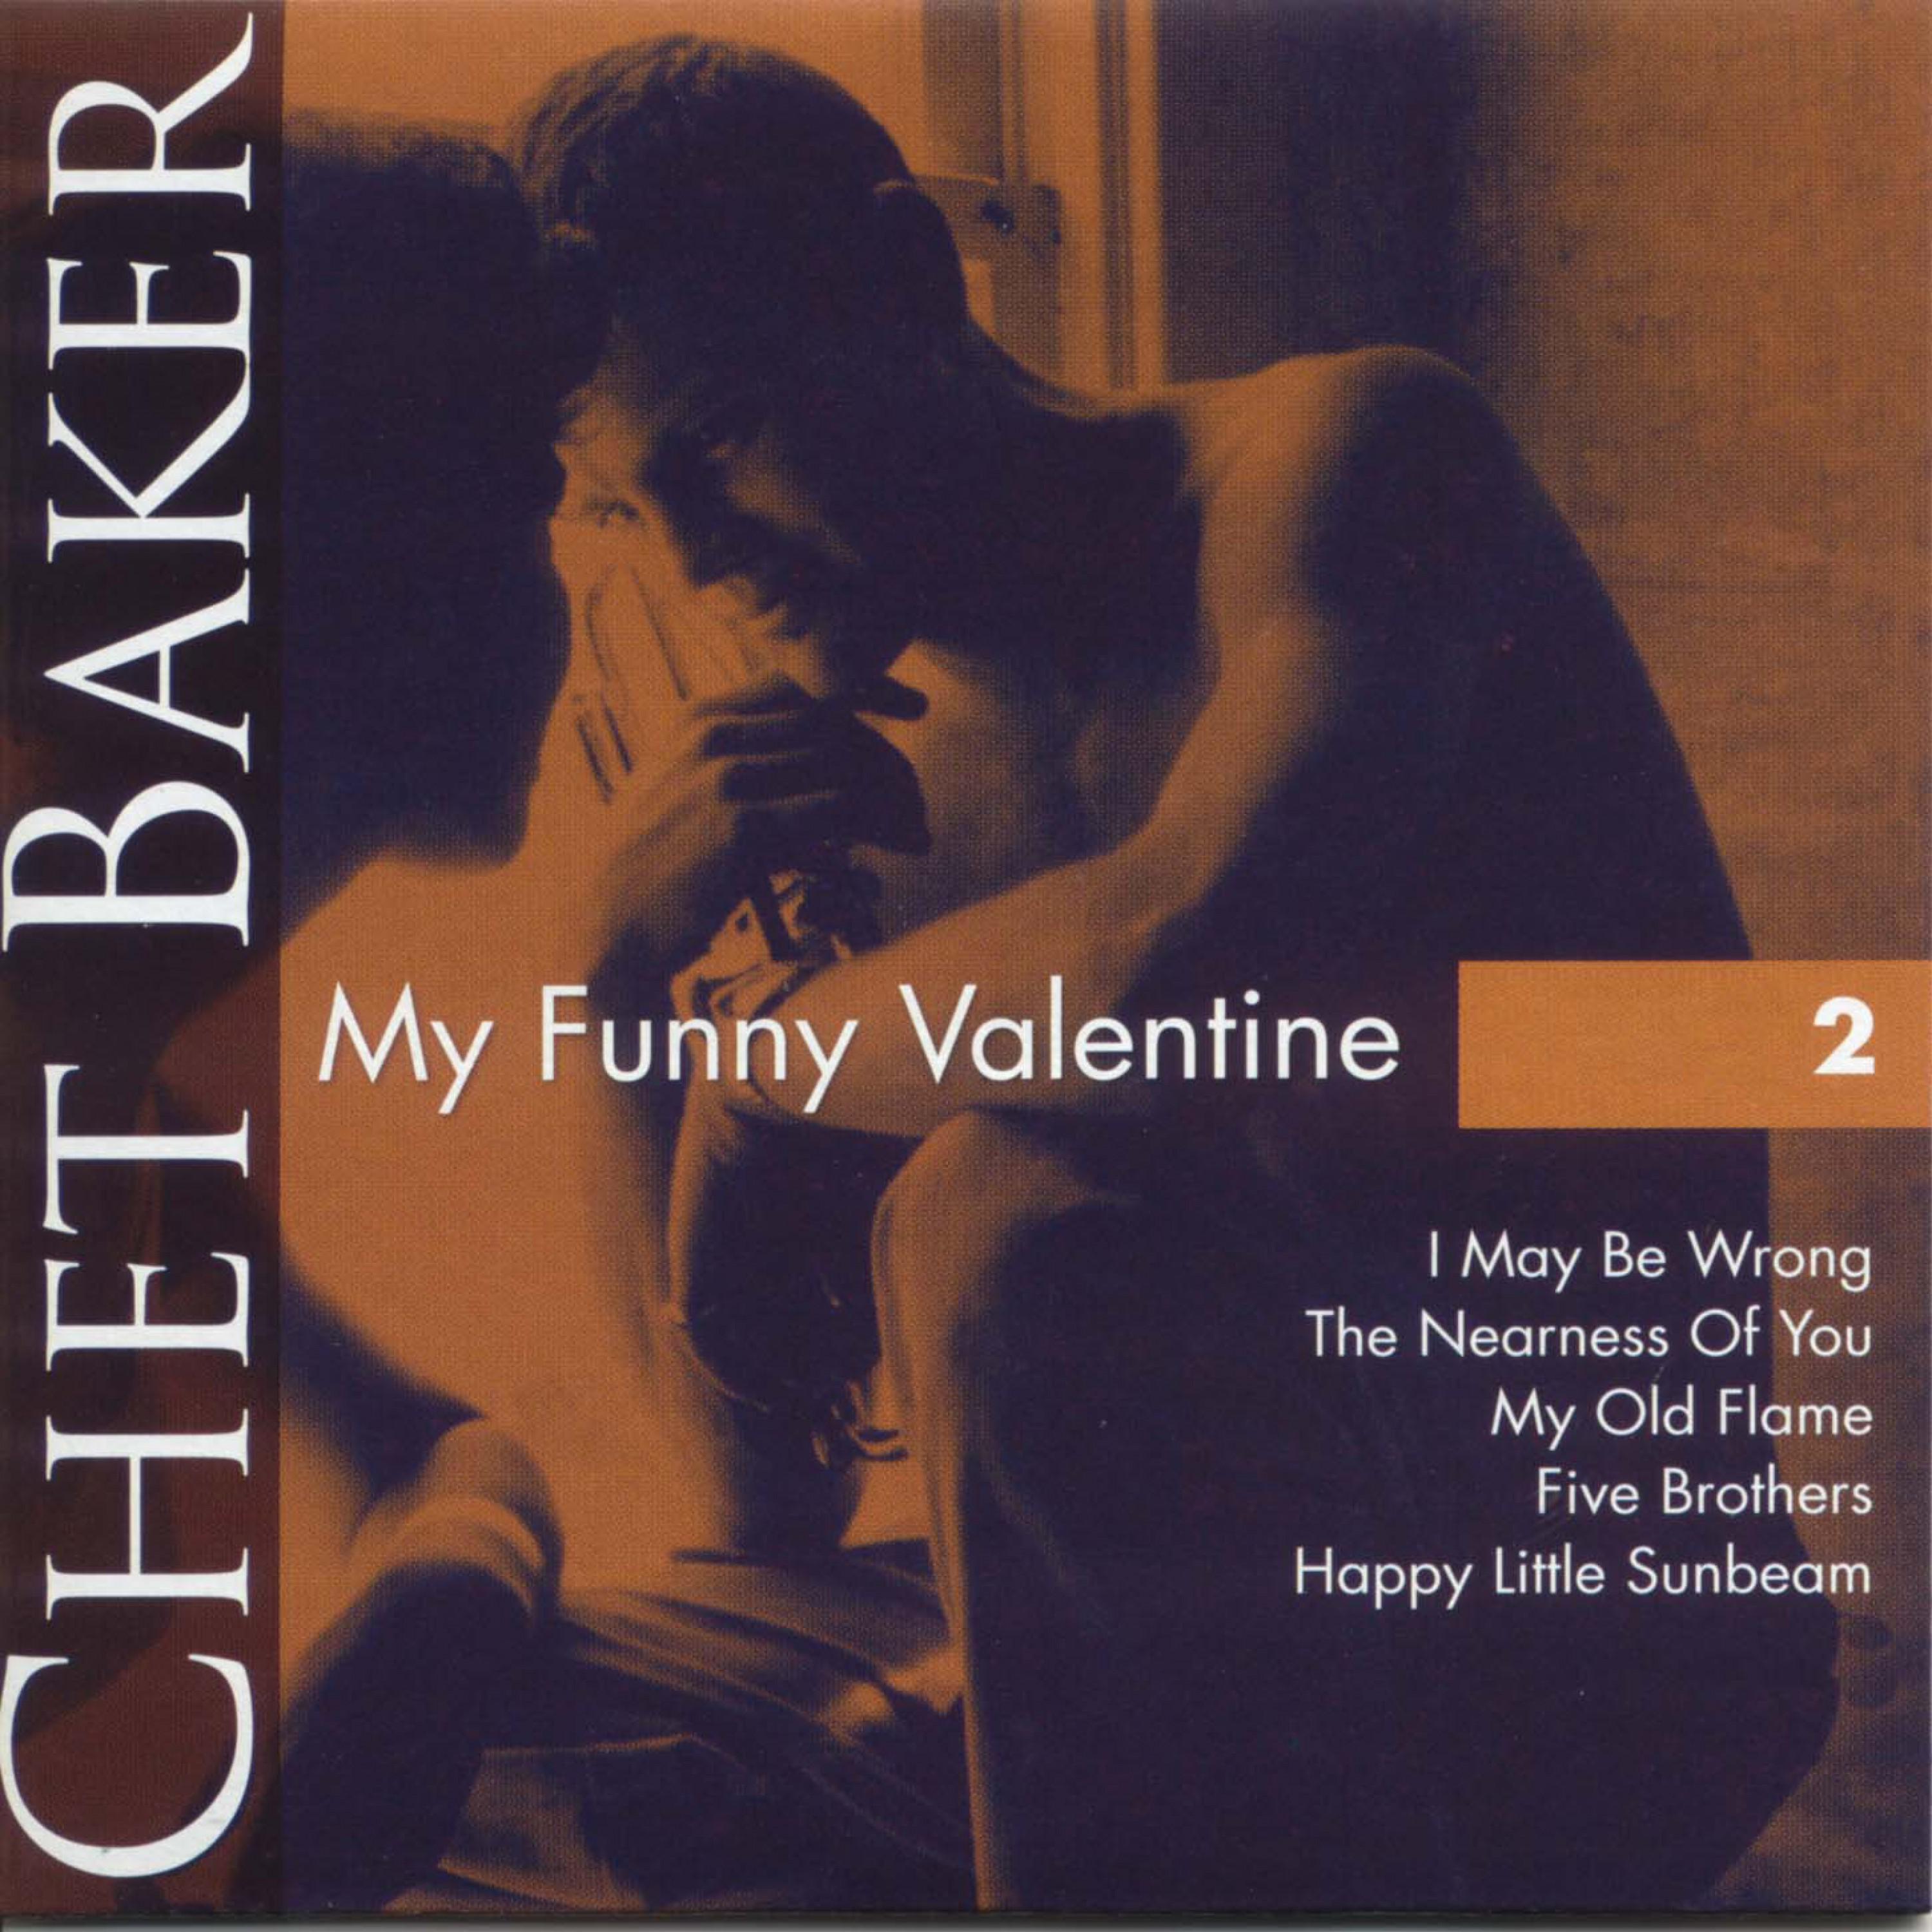 Chet Baker Vol. 2专辑